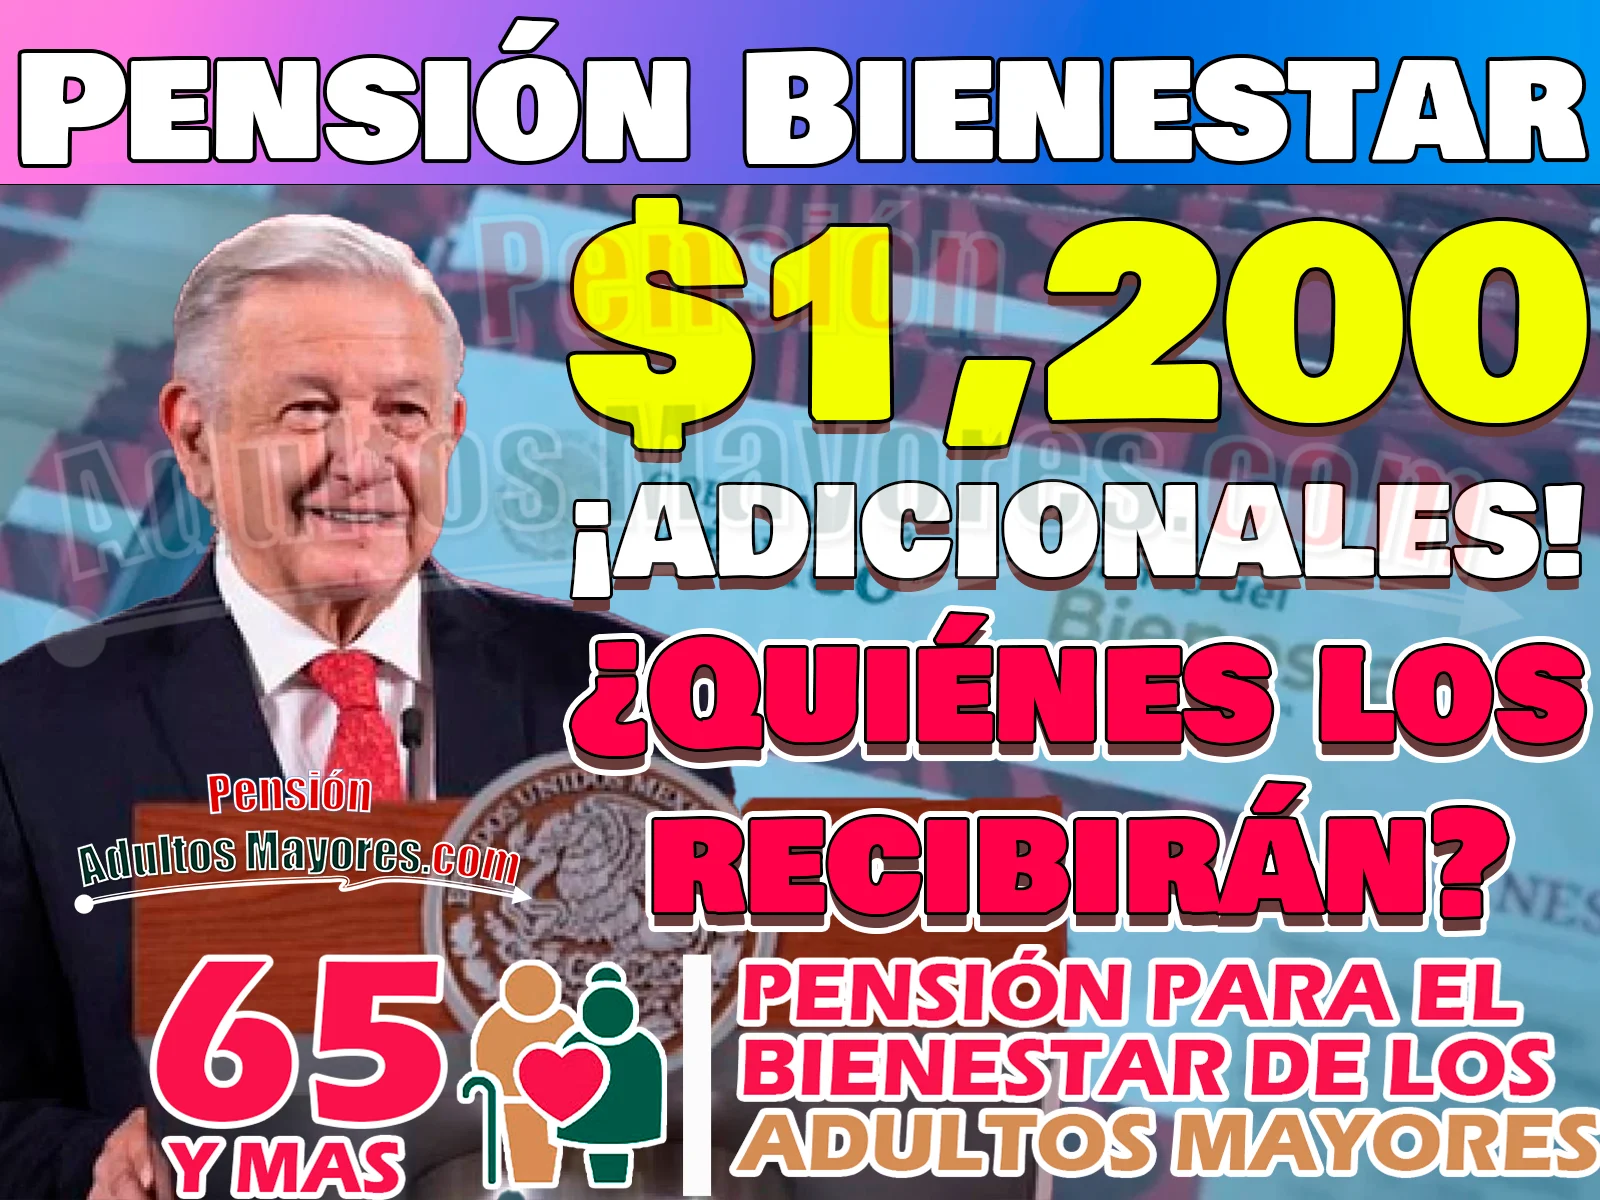 Personas Adultas Mayores que recibirán $1,200 pesos EXTRA en su Pensión del Bienestar